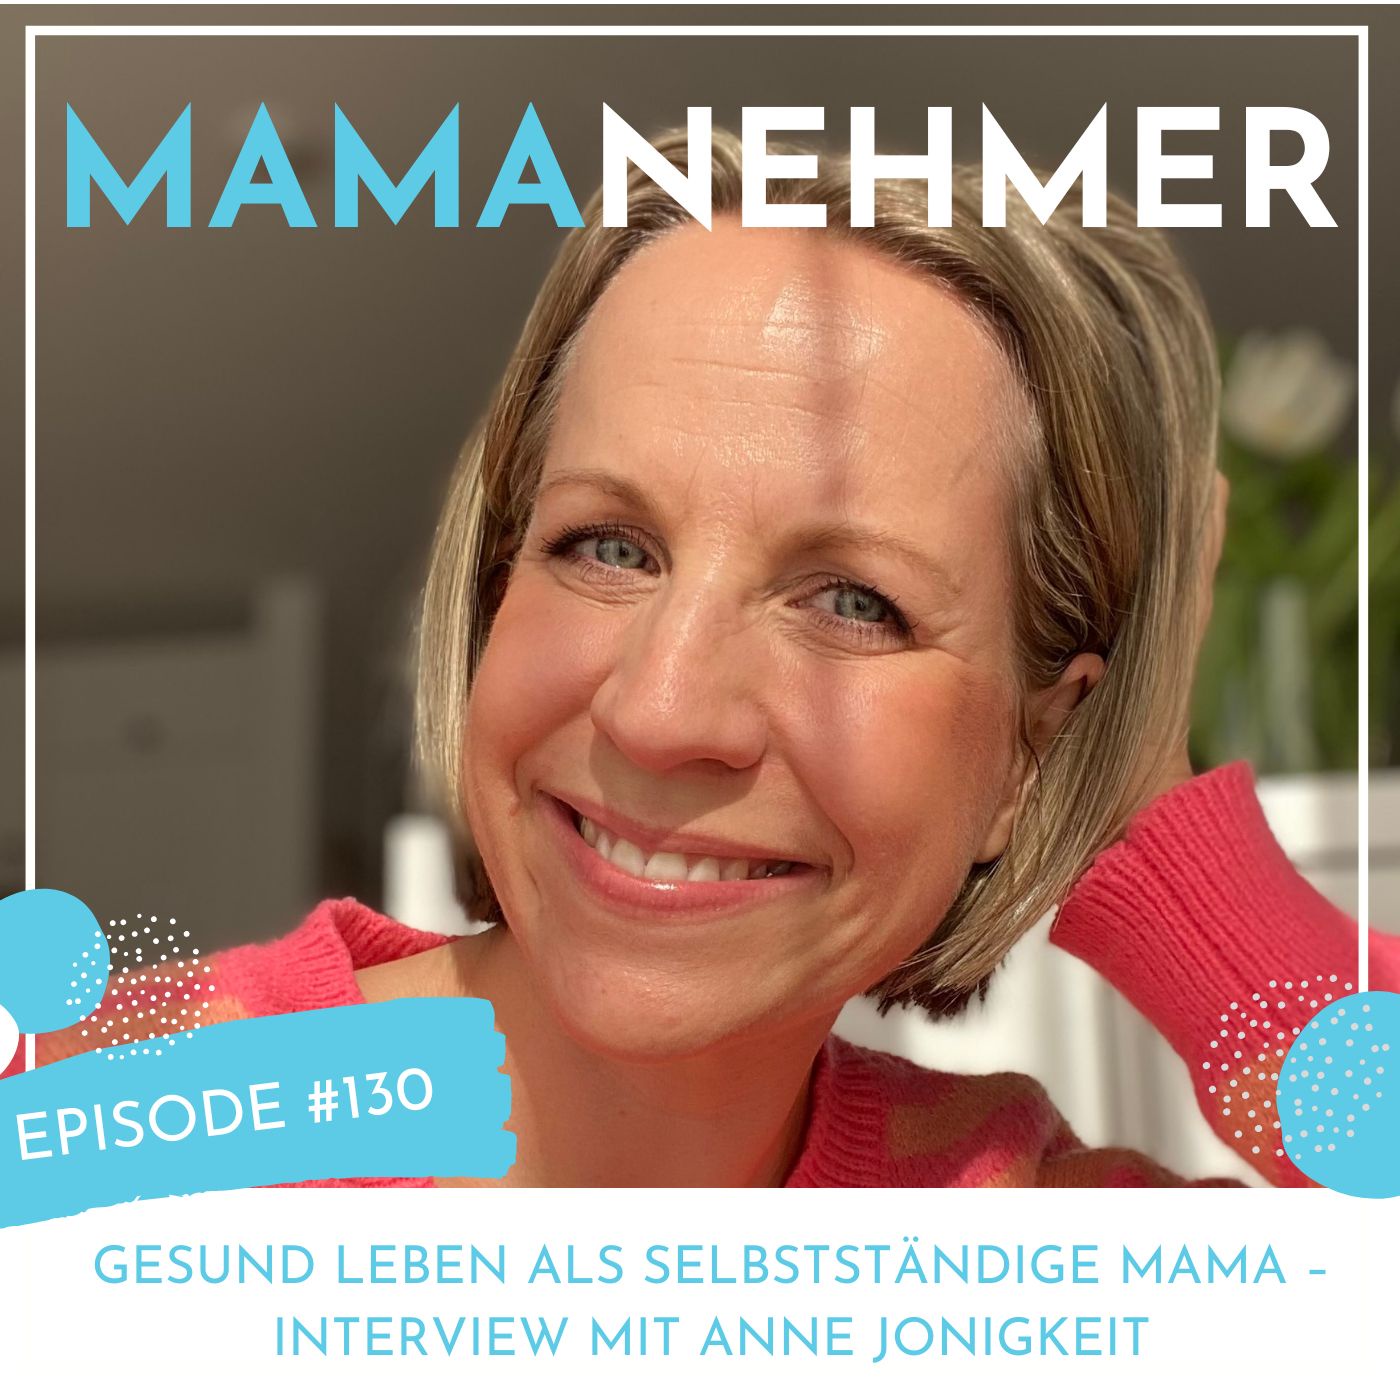 Gesund leben als selbstständige Mama – Interview mit Anne Jonigkeit